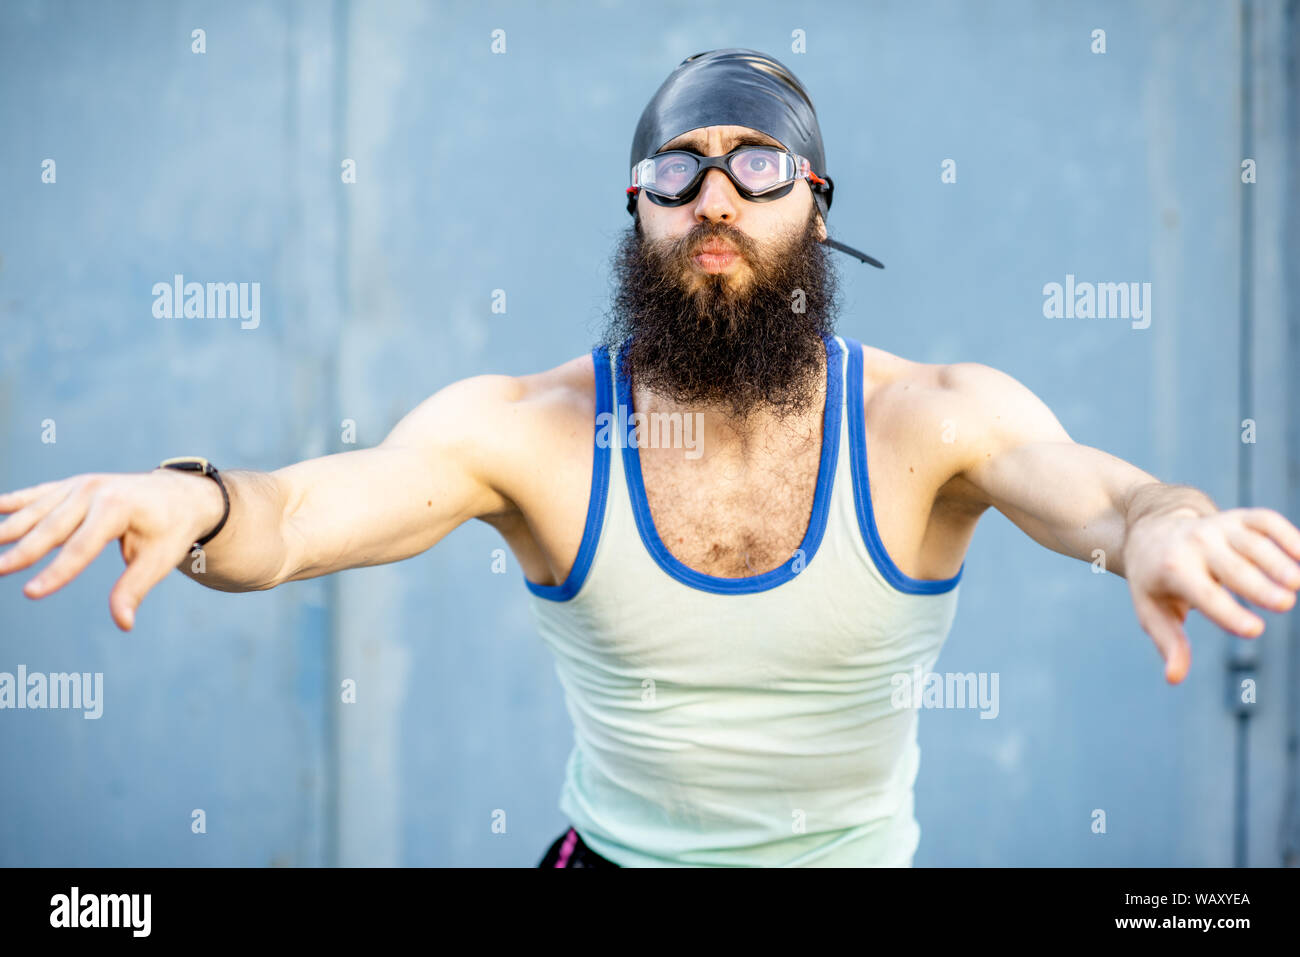 Porträt einer sonderbaren, altmodische Schwimmer im 80er Jahre Stil mit Hut  gekleidet und Schwimmen Brille auf gelbem Hintergrund Stockfotografie -  Alamy